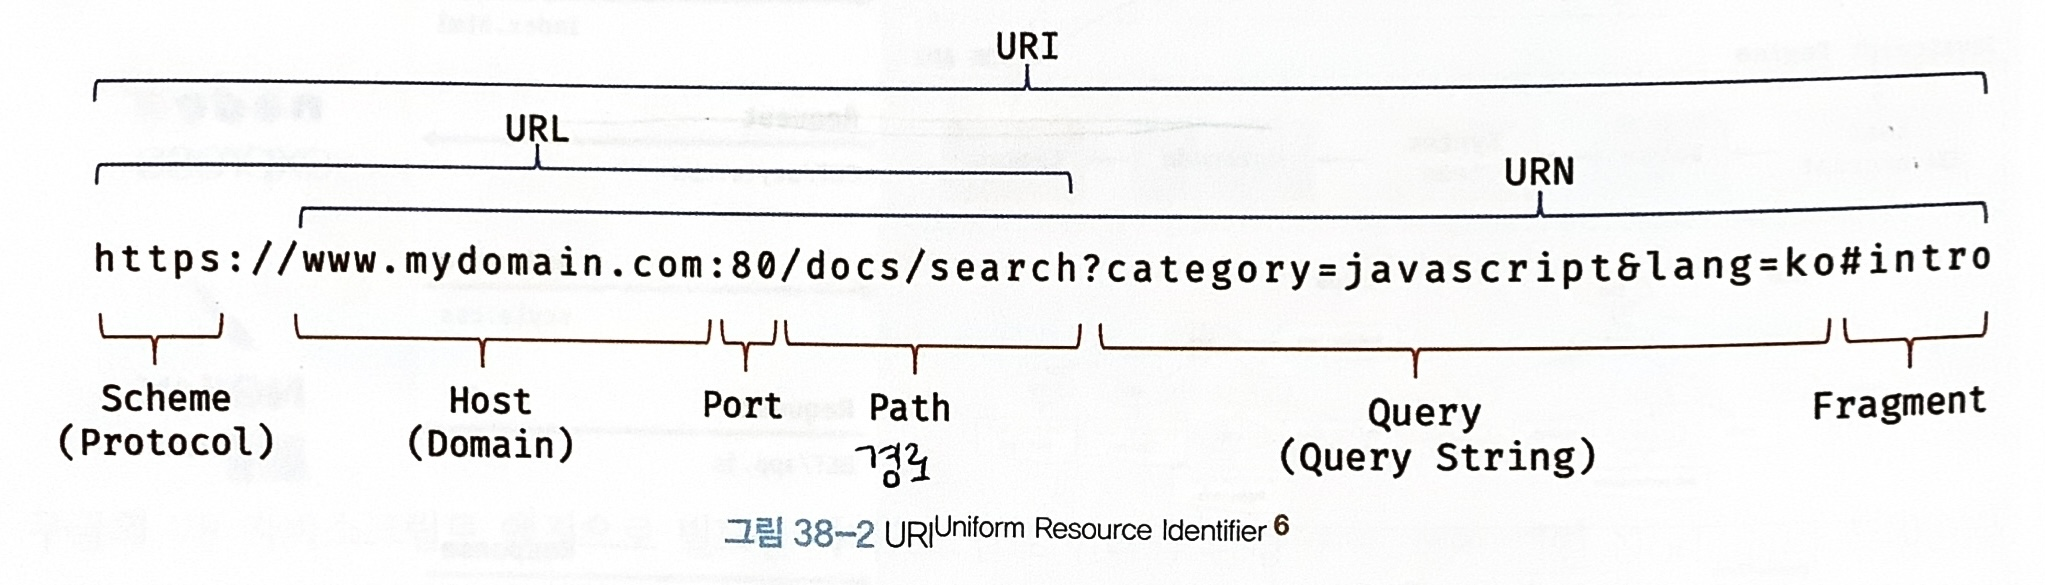 구체적 예시를 통한 URI, URL, URN 설명